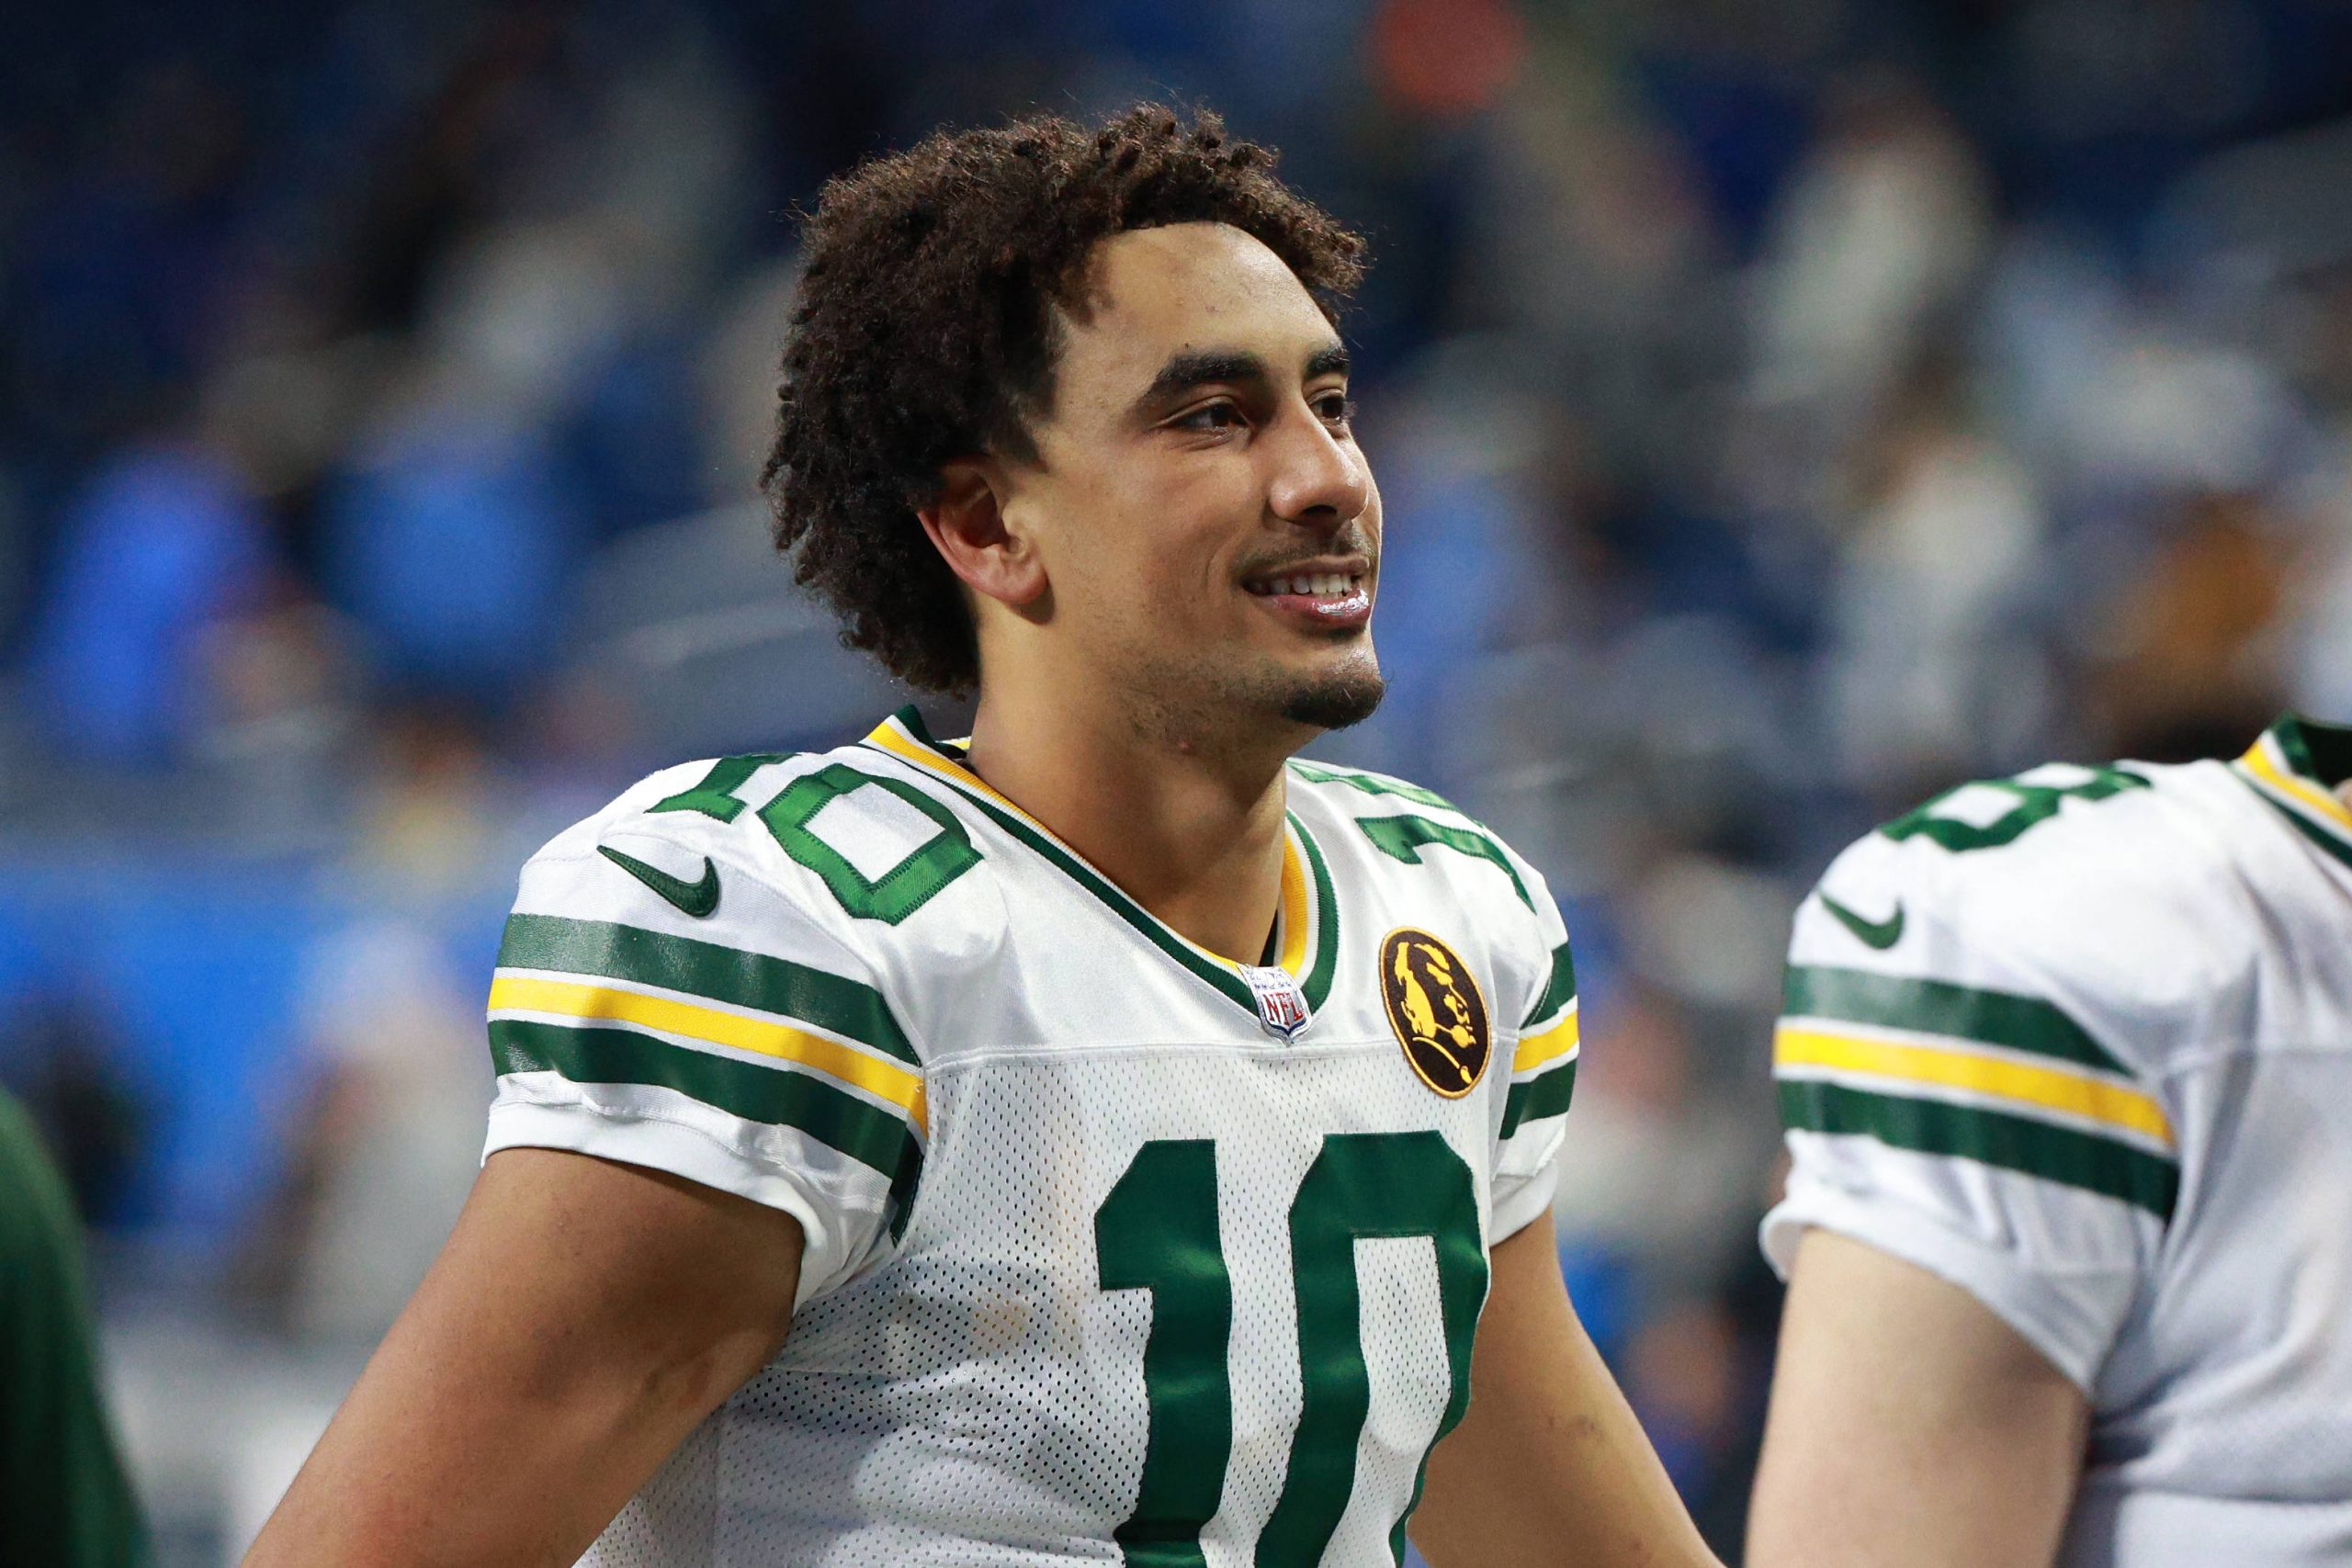 FootballR - NFL Playoff Picture - Zwei Packers-Spieler, Jordan Love und ein Teamkollege, lächeln nach Spielende.